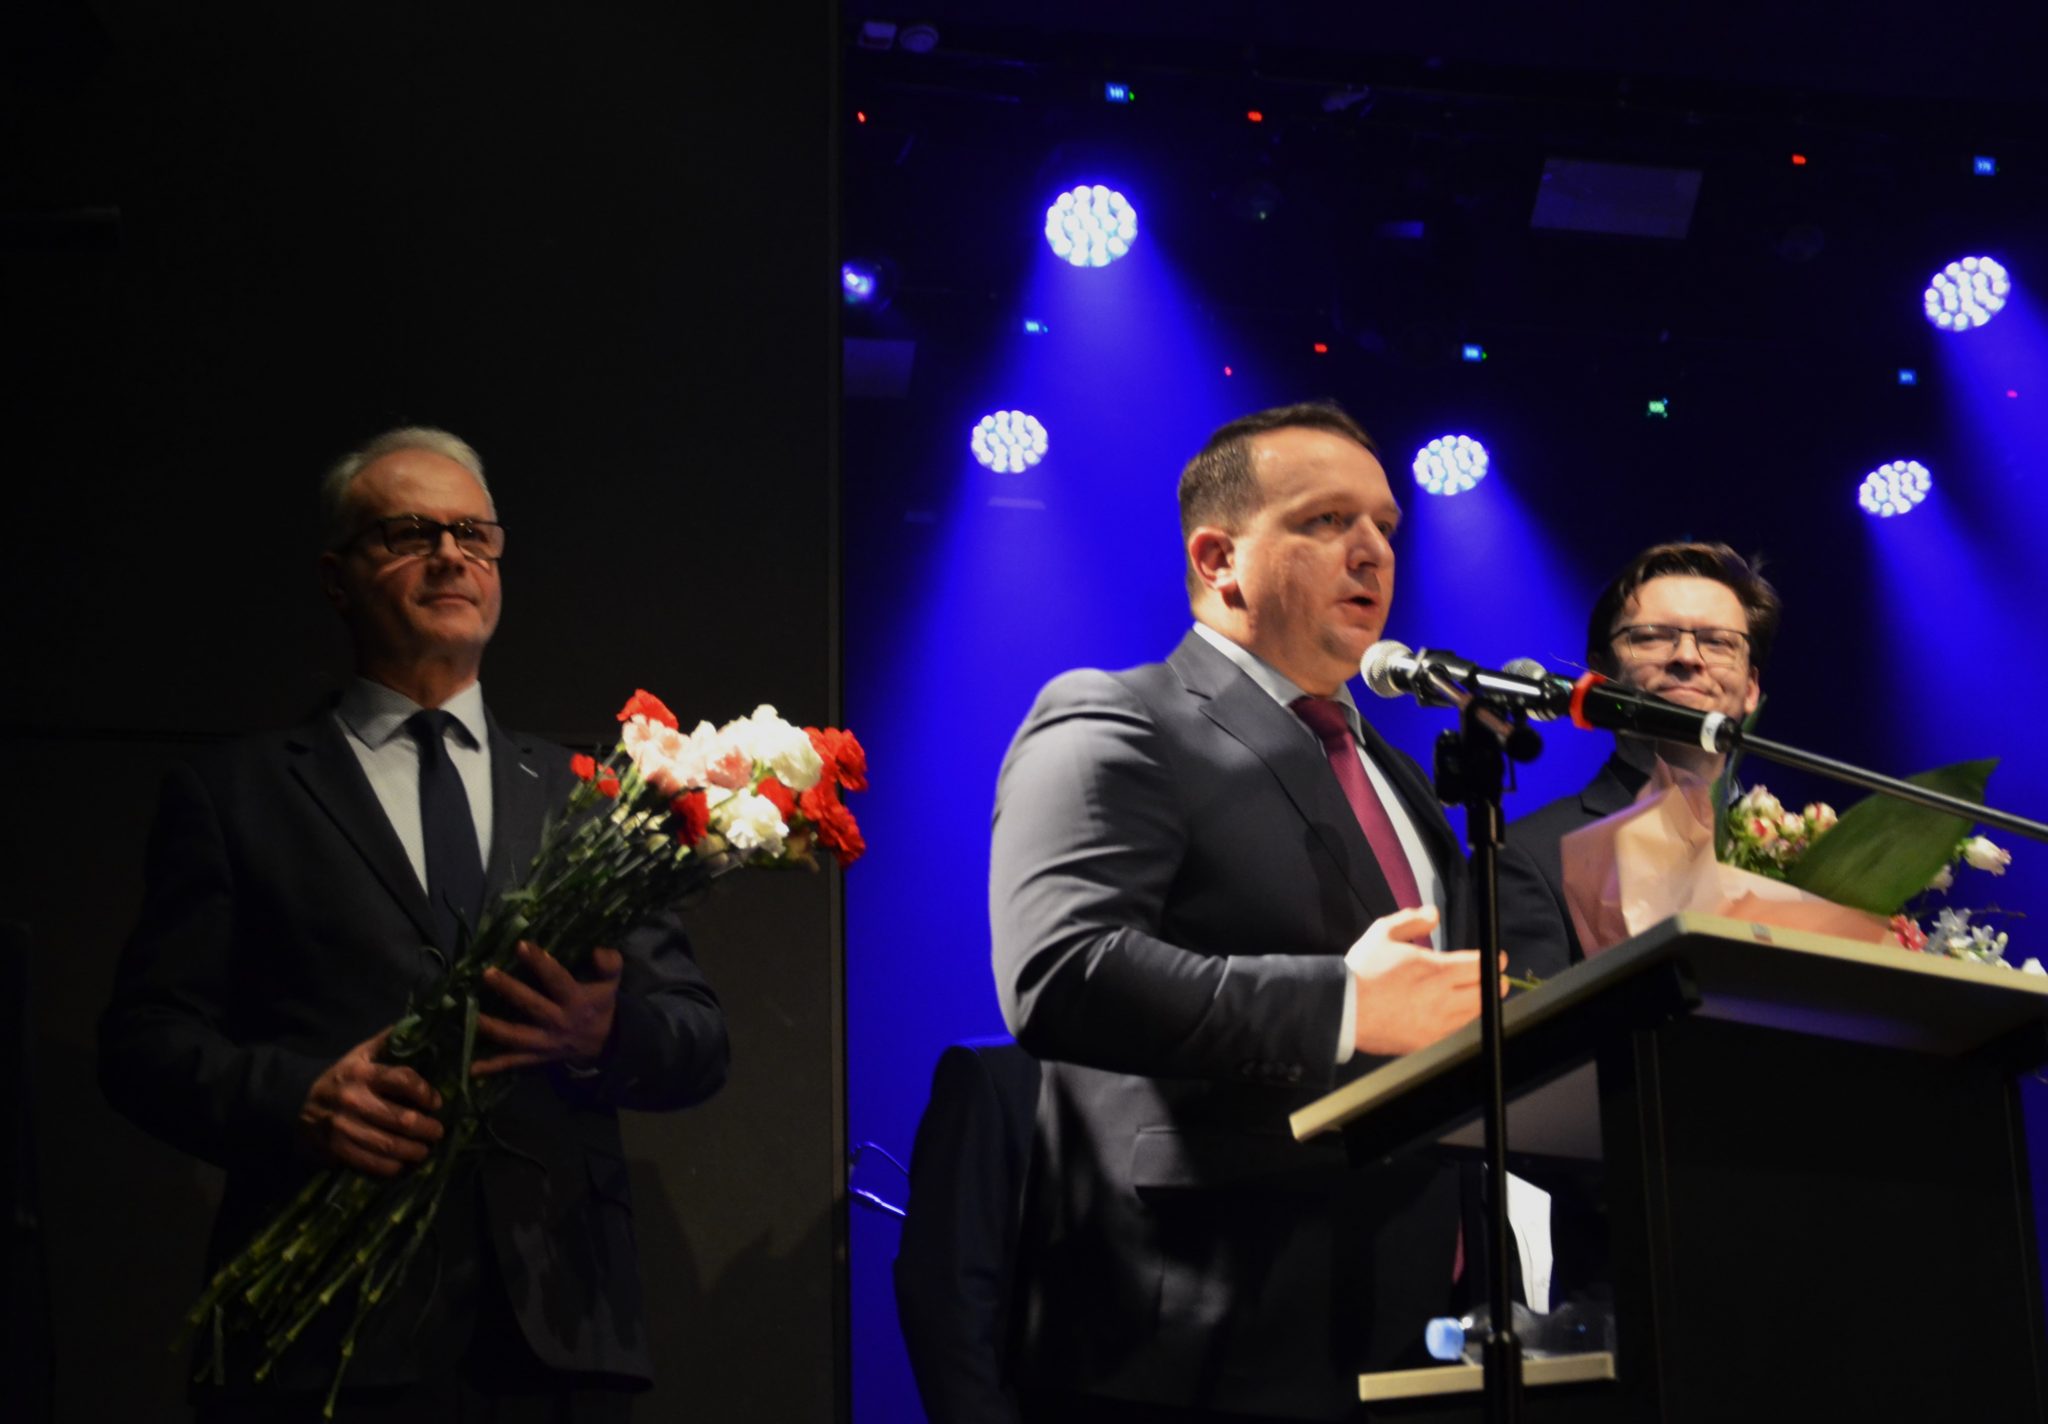 Mężczyzna podczas przemowy do mikrofonu. Po lewej stronie mężczyzna z bukietem biało-czerwonych kwiatów.